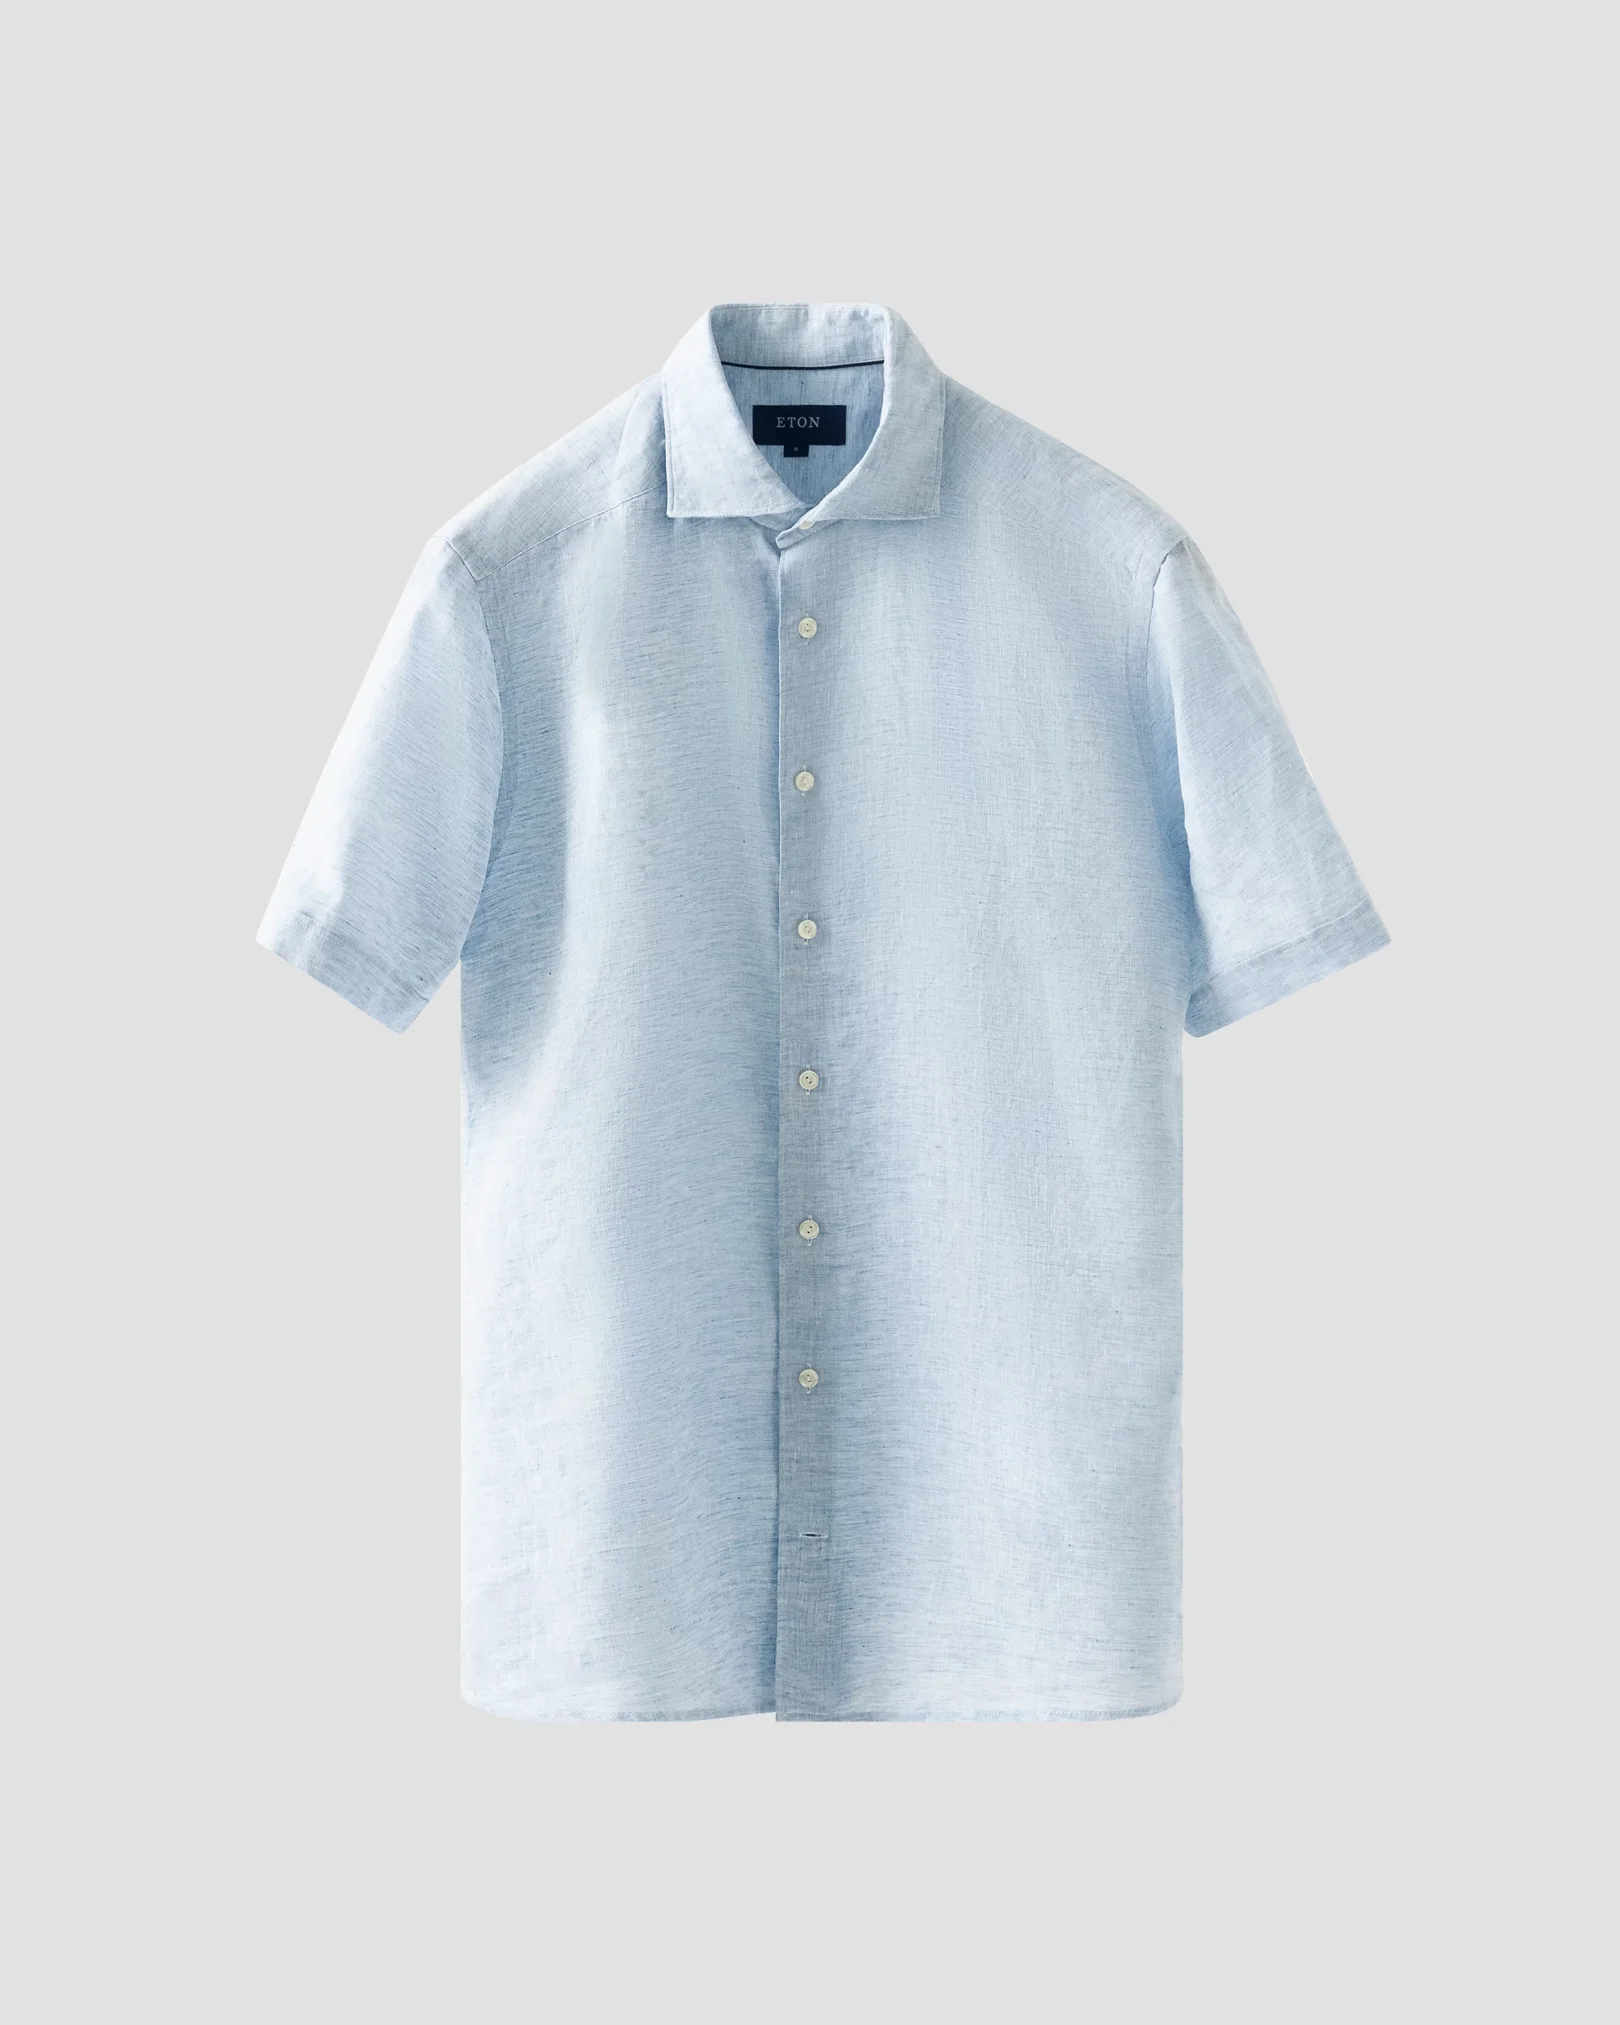 Chemise bleu clair en lin - Manches courtes